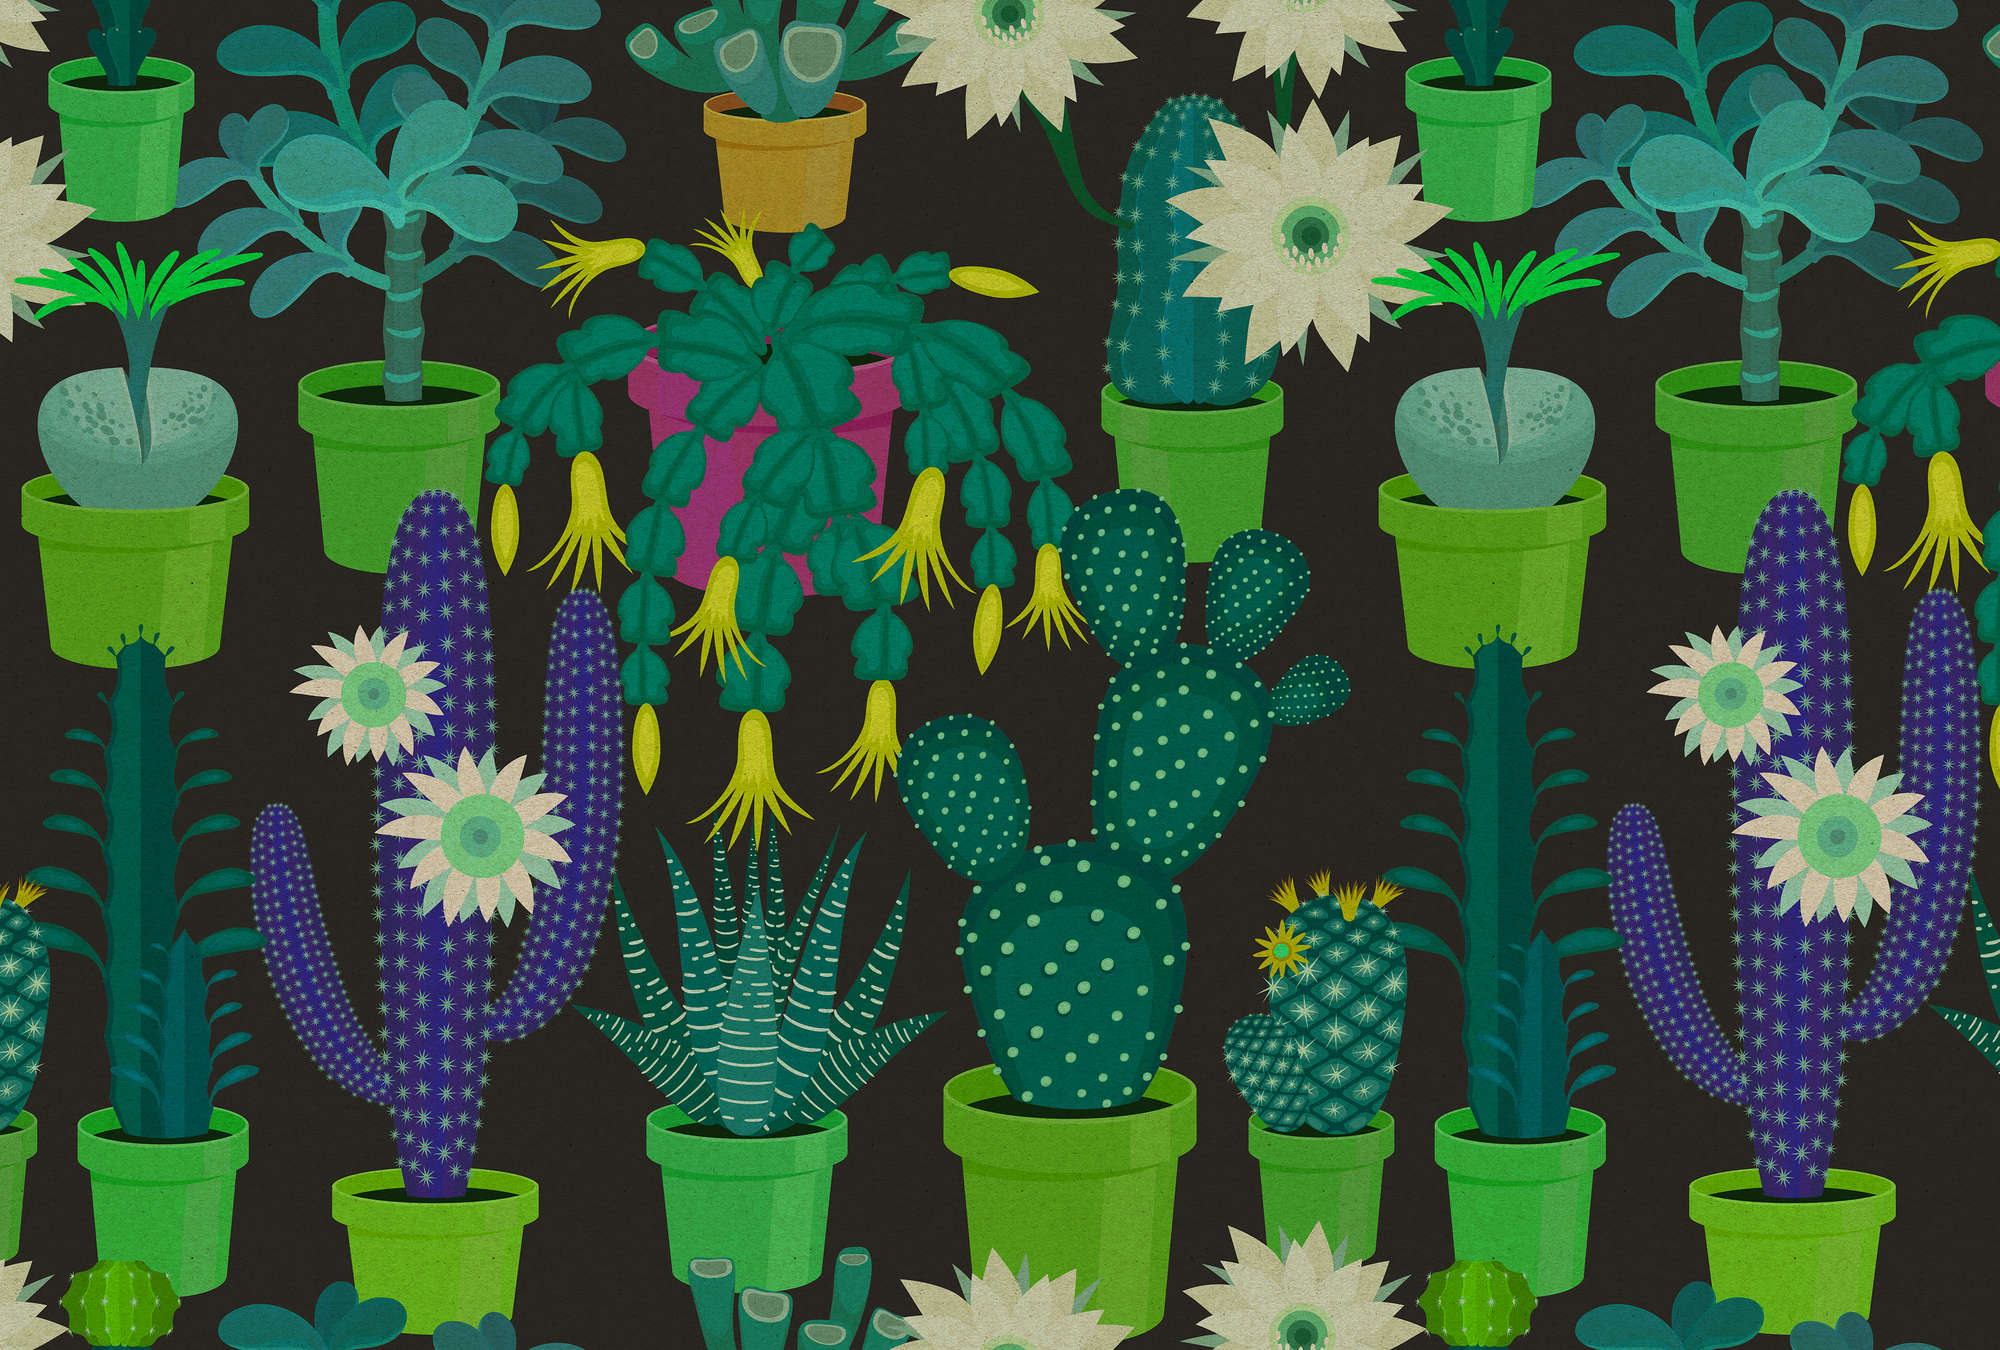             Cactus garden 2 - Papier peint avec des cactus colorés de style bande dessinée dans une structure en carton - vert, noir | intissé lisse nacré
        